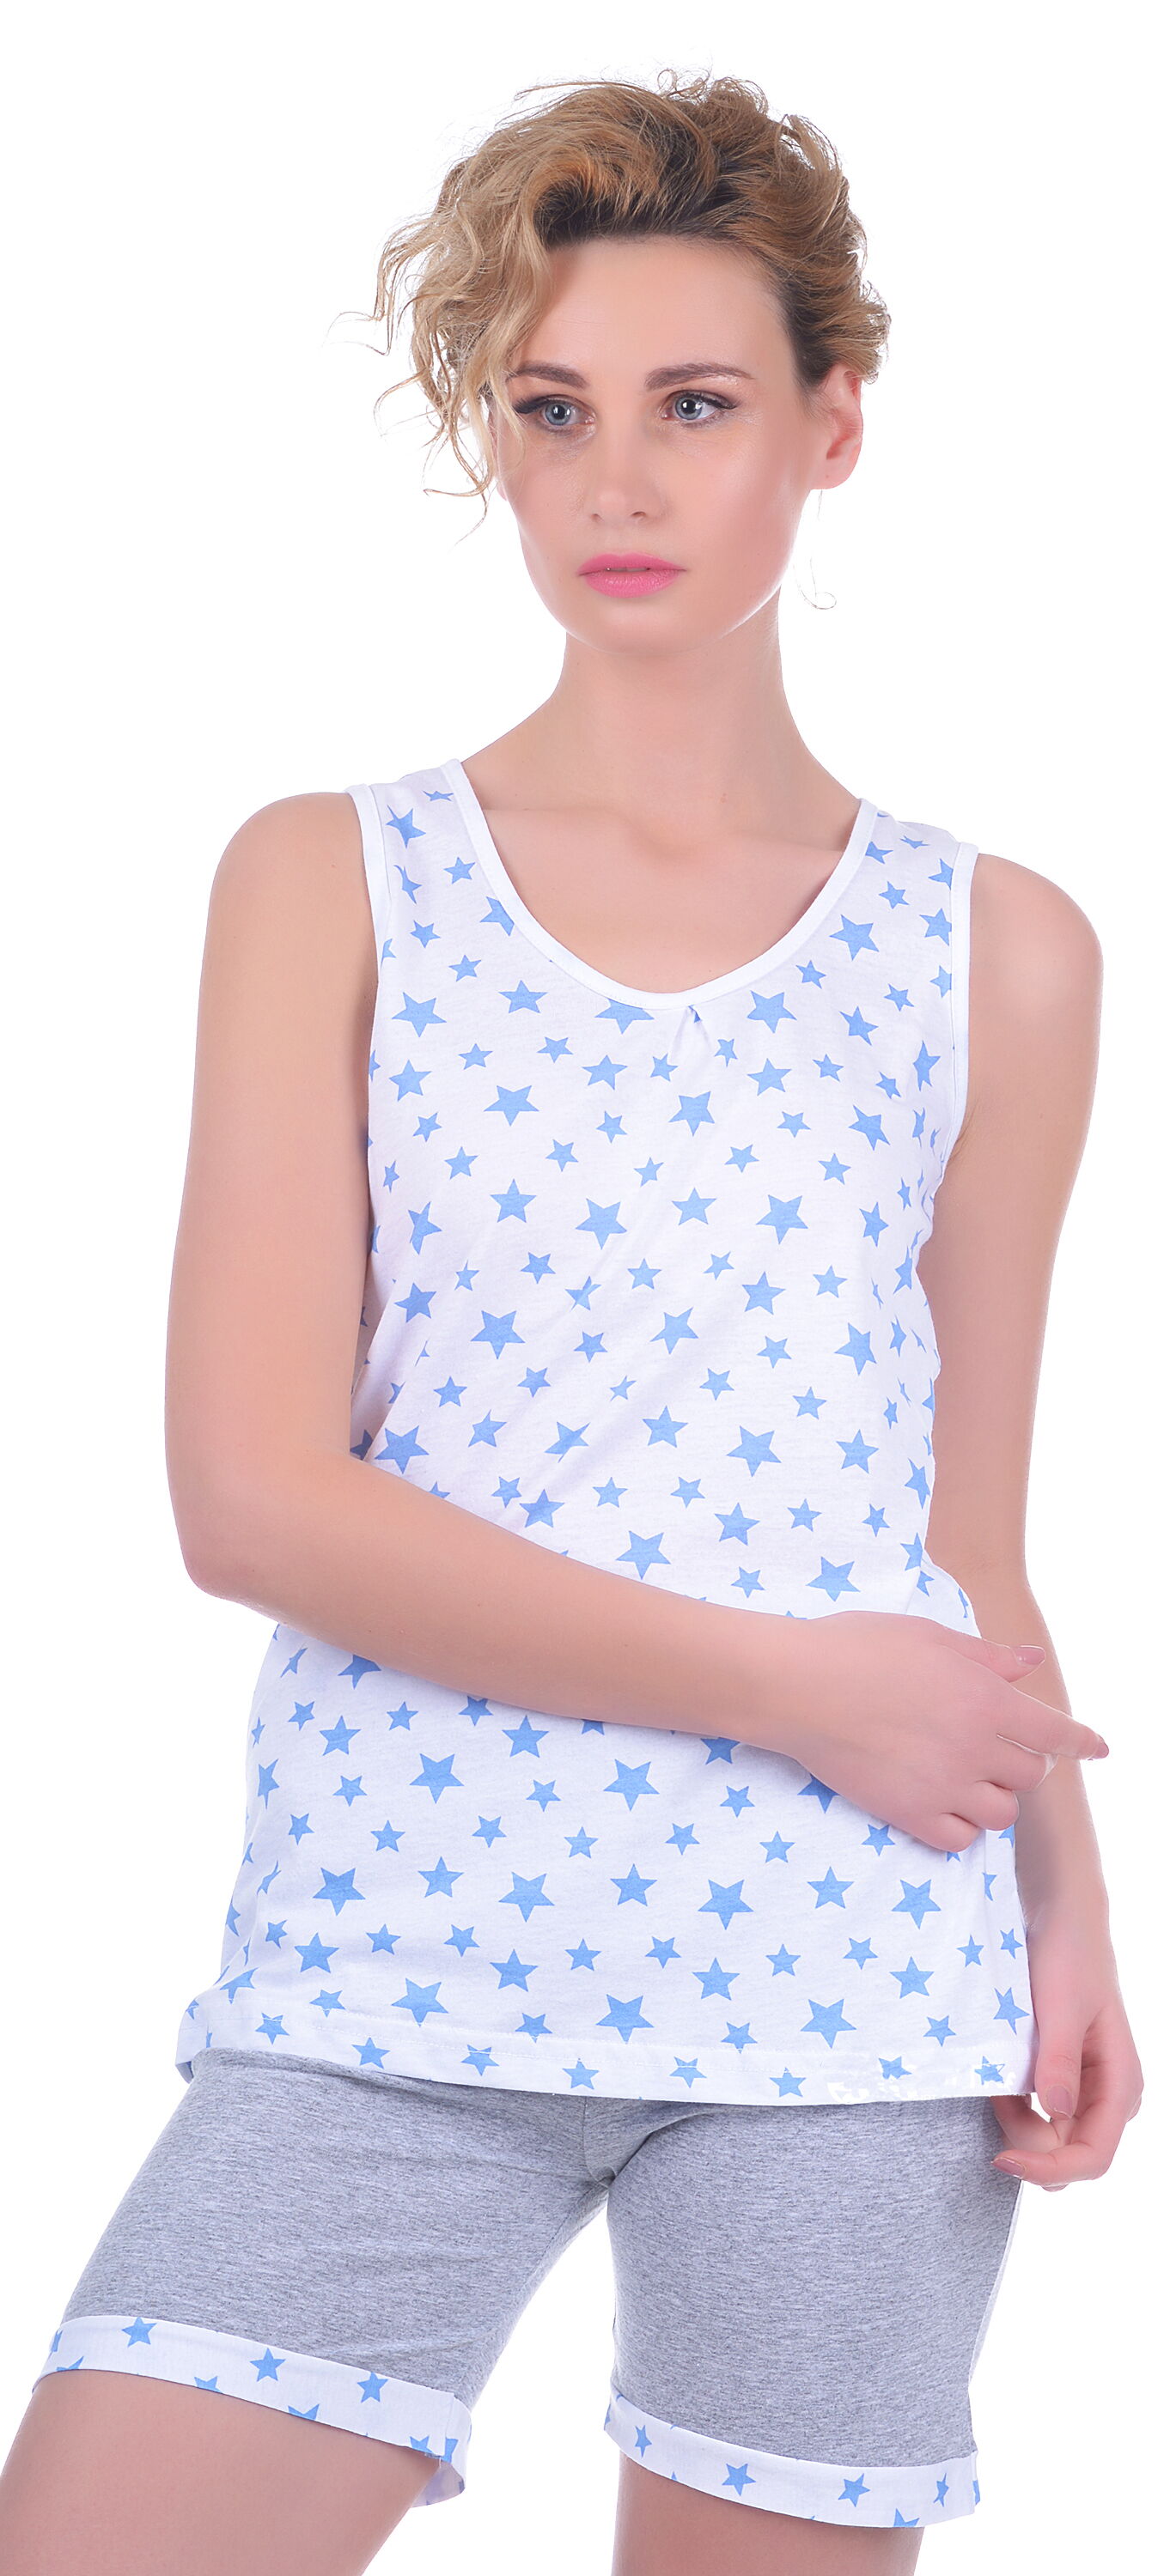 Комплект женский (майка+шорты) MISS FIRST STARS голубой - цена